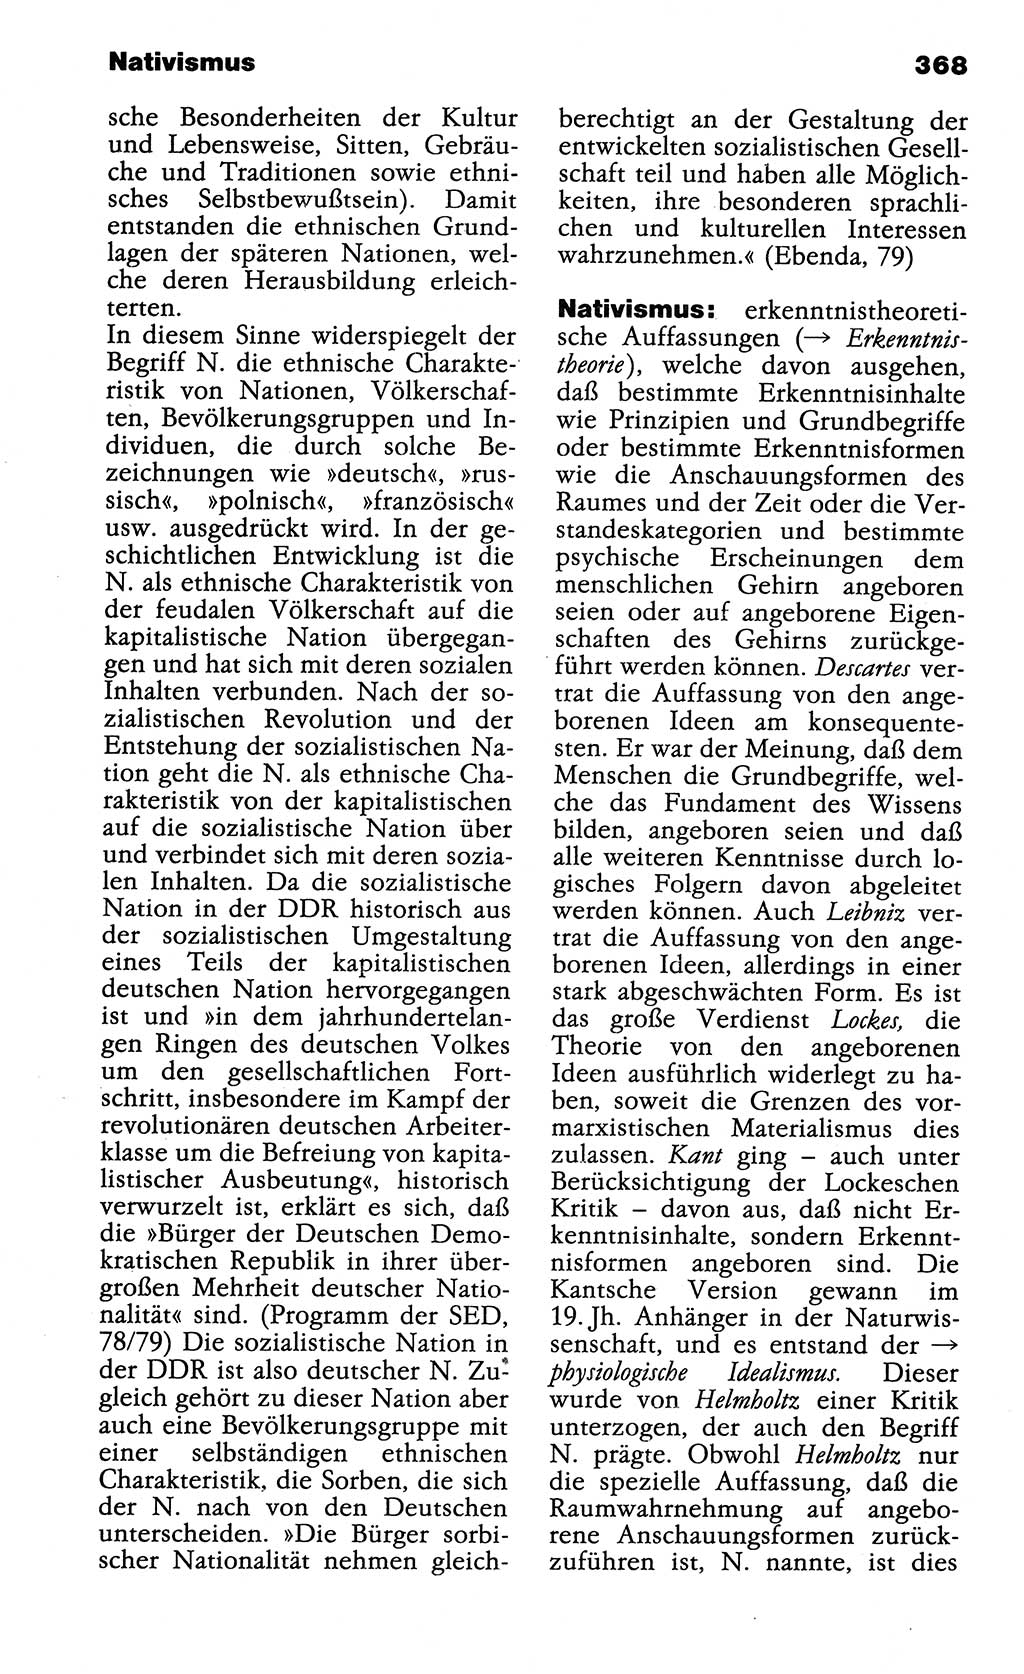 Wörterbuch der marxistisch-leninistischen Philosophie [Deutsche Demokratische Republik (DDR)] 1985, Seite 368 (Wb. ML Phil. DDR 1985, S. 368)